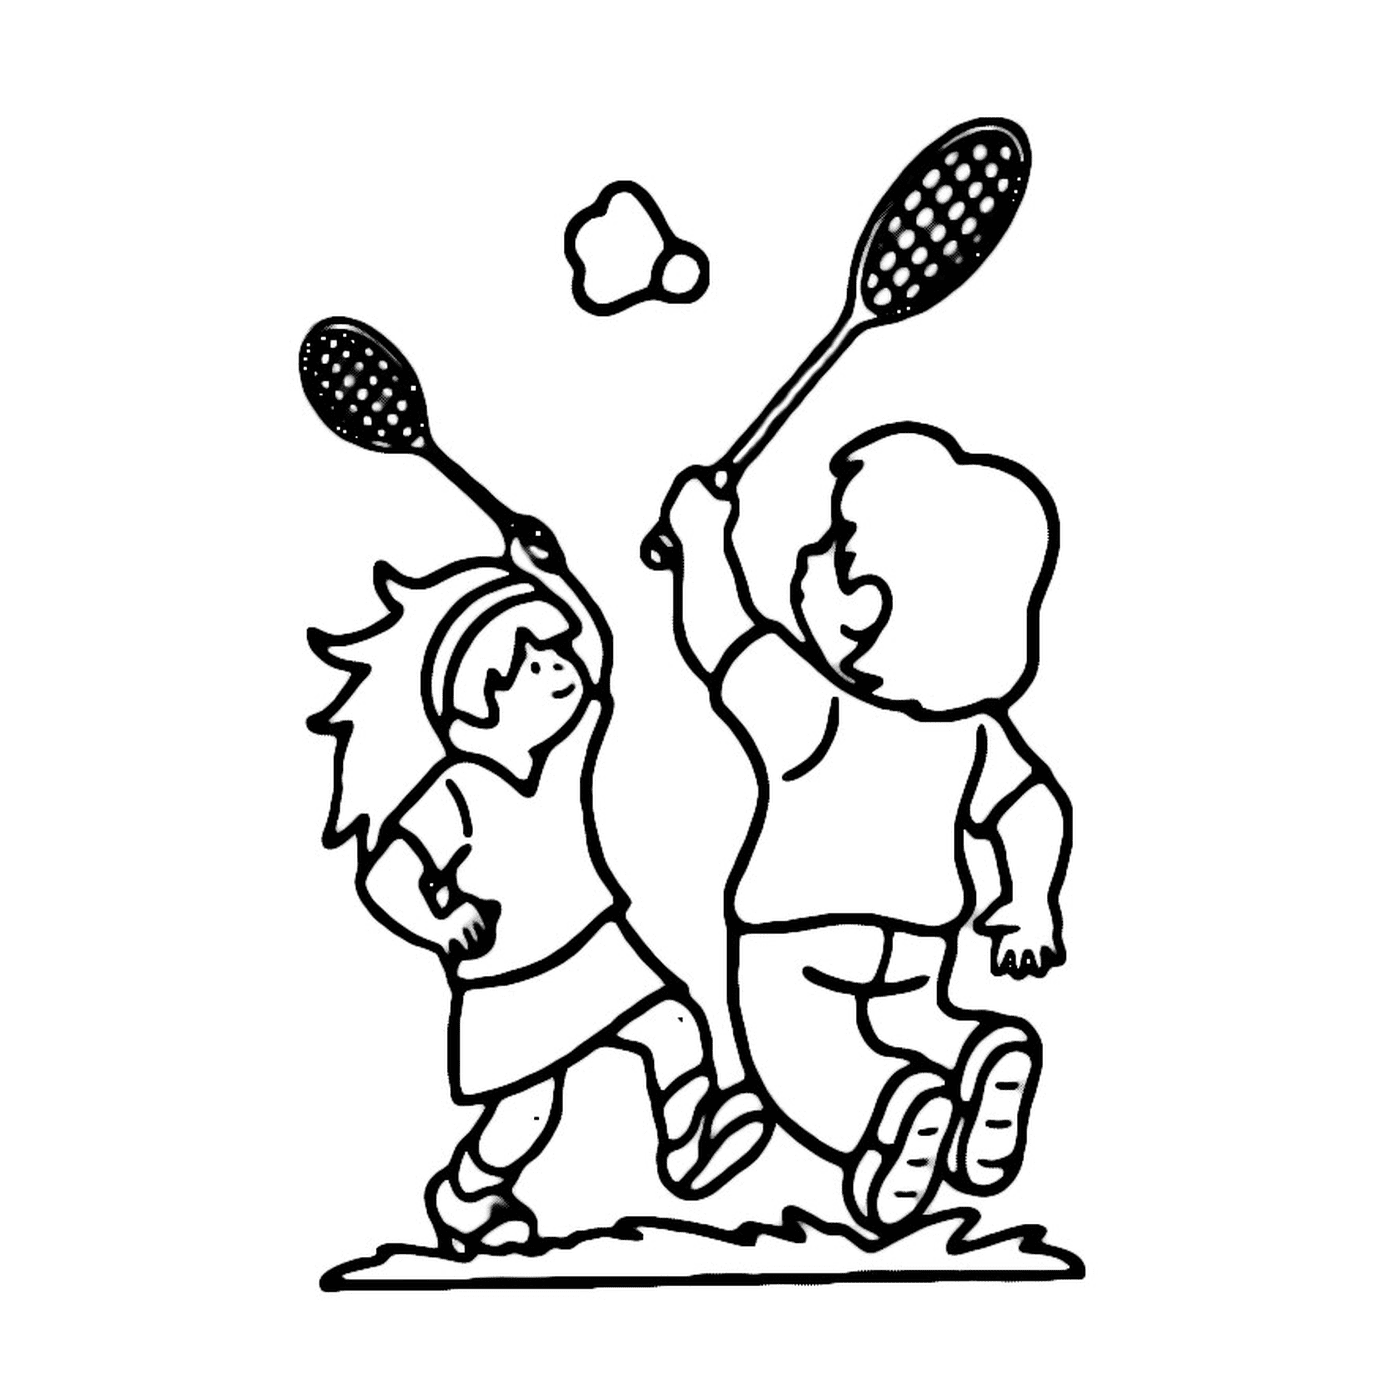 enfants jouent au badminton